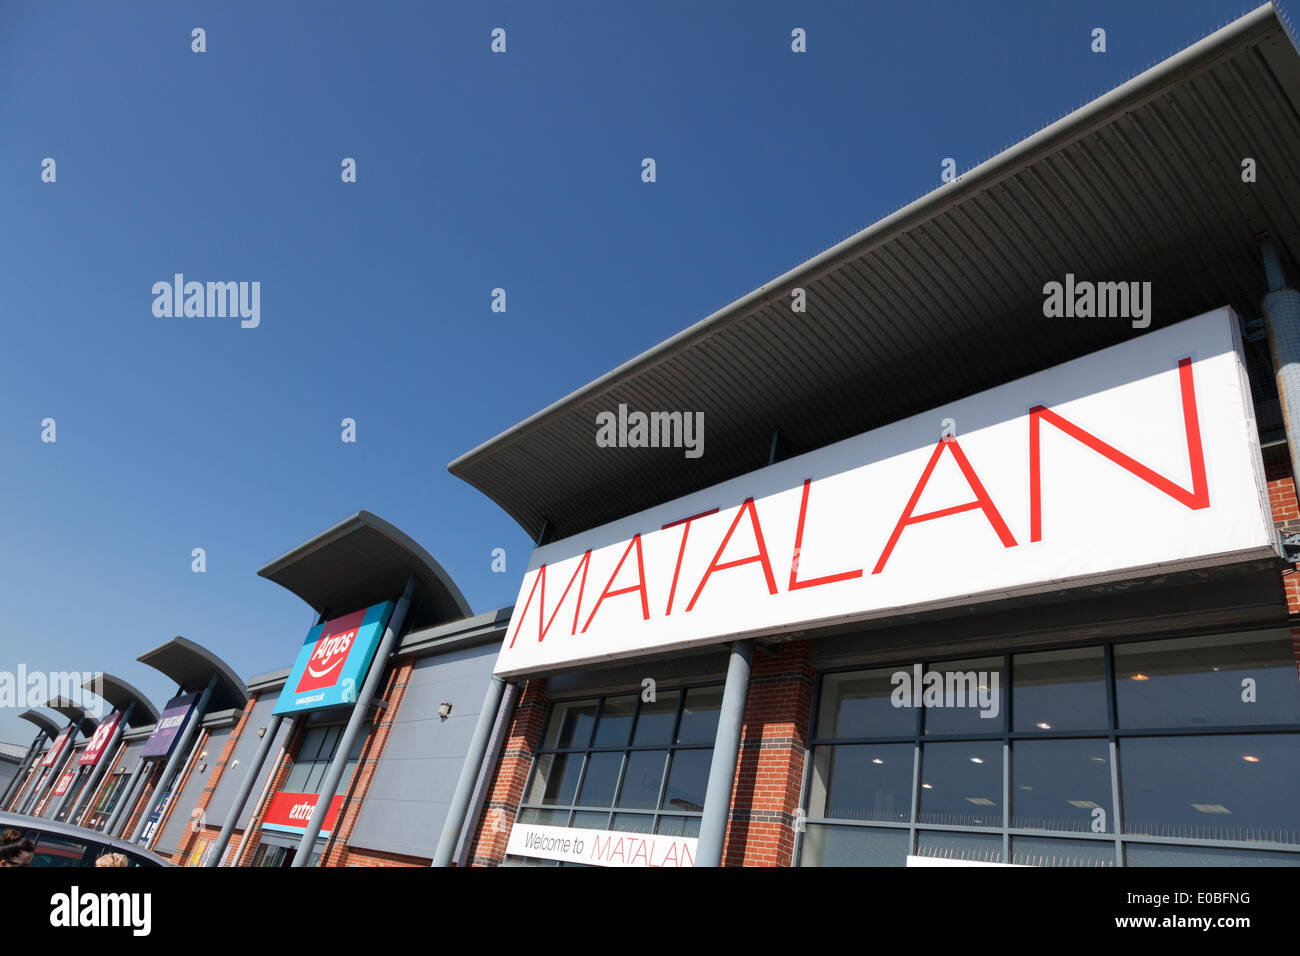 Tienda Matalan a fuera de la ciudad moderna de desarrollo comercial. Foto de stock